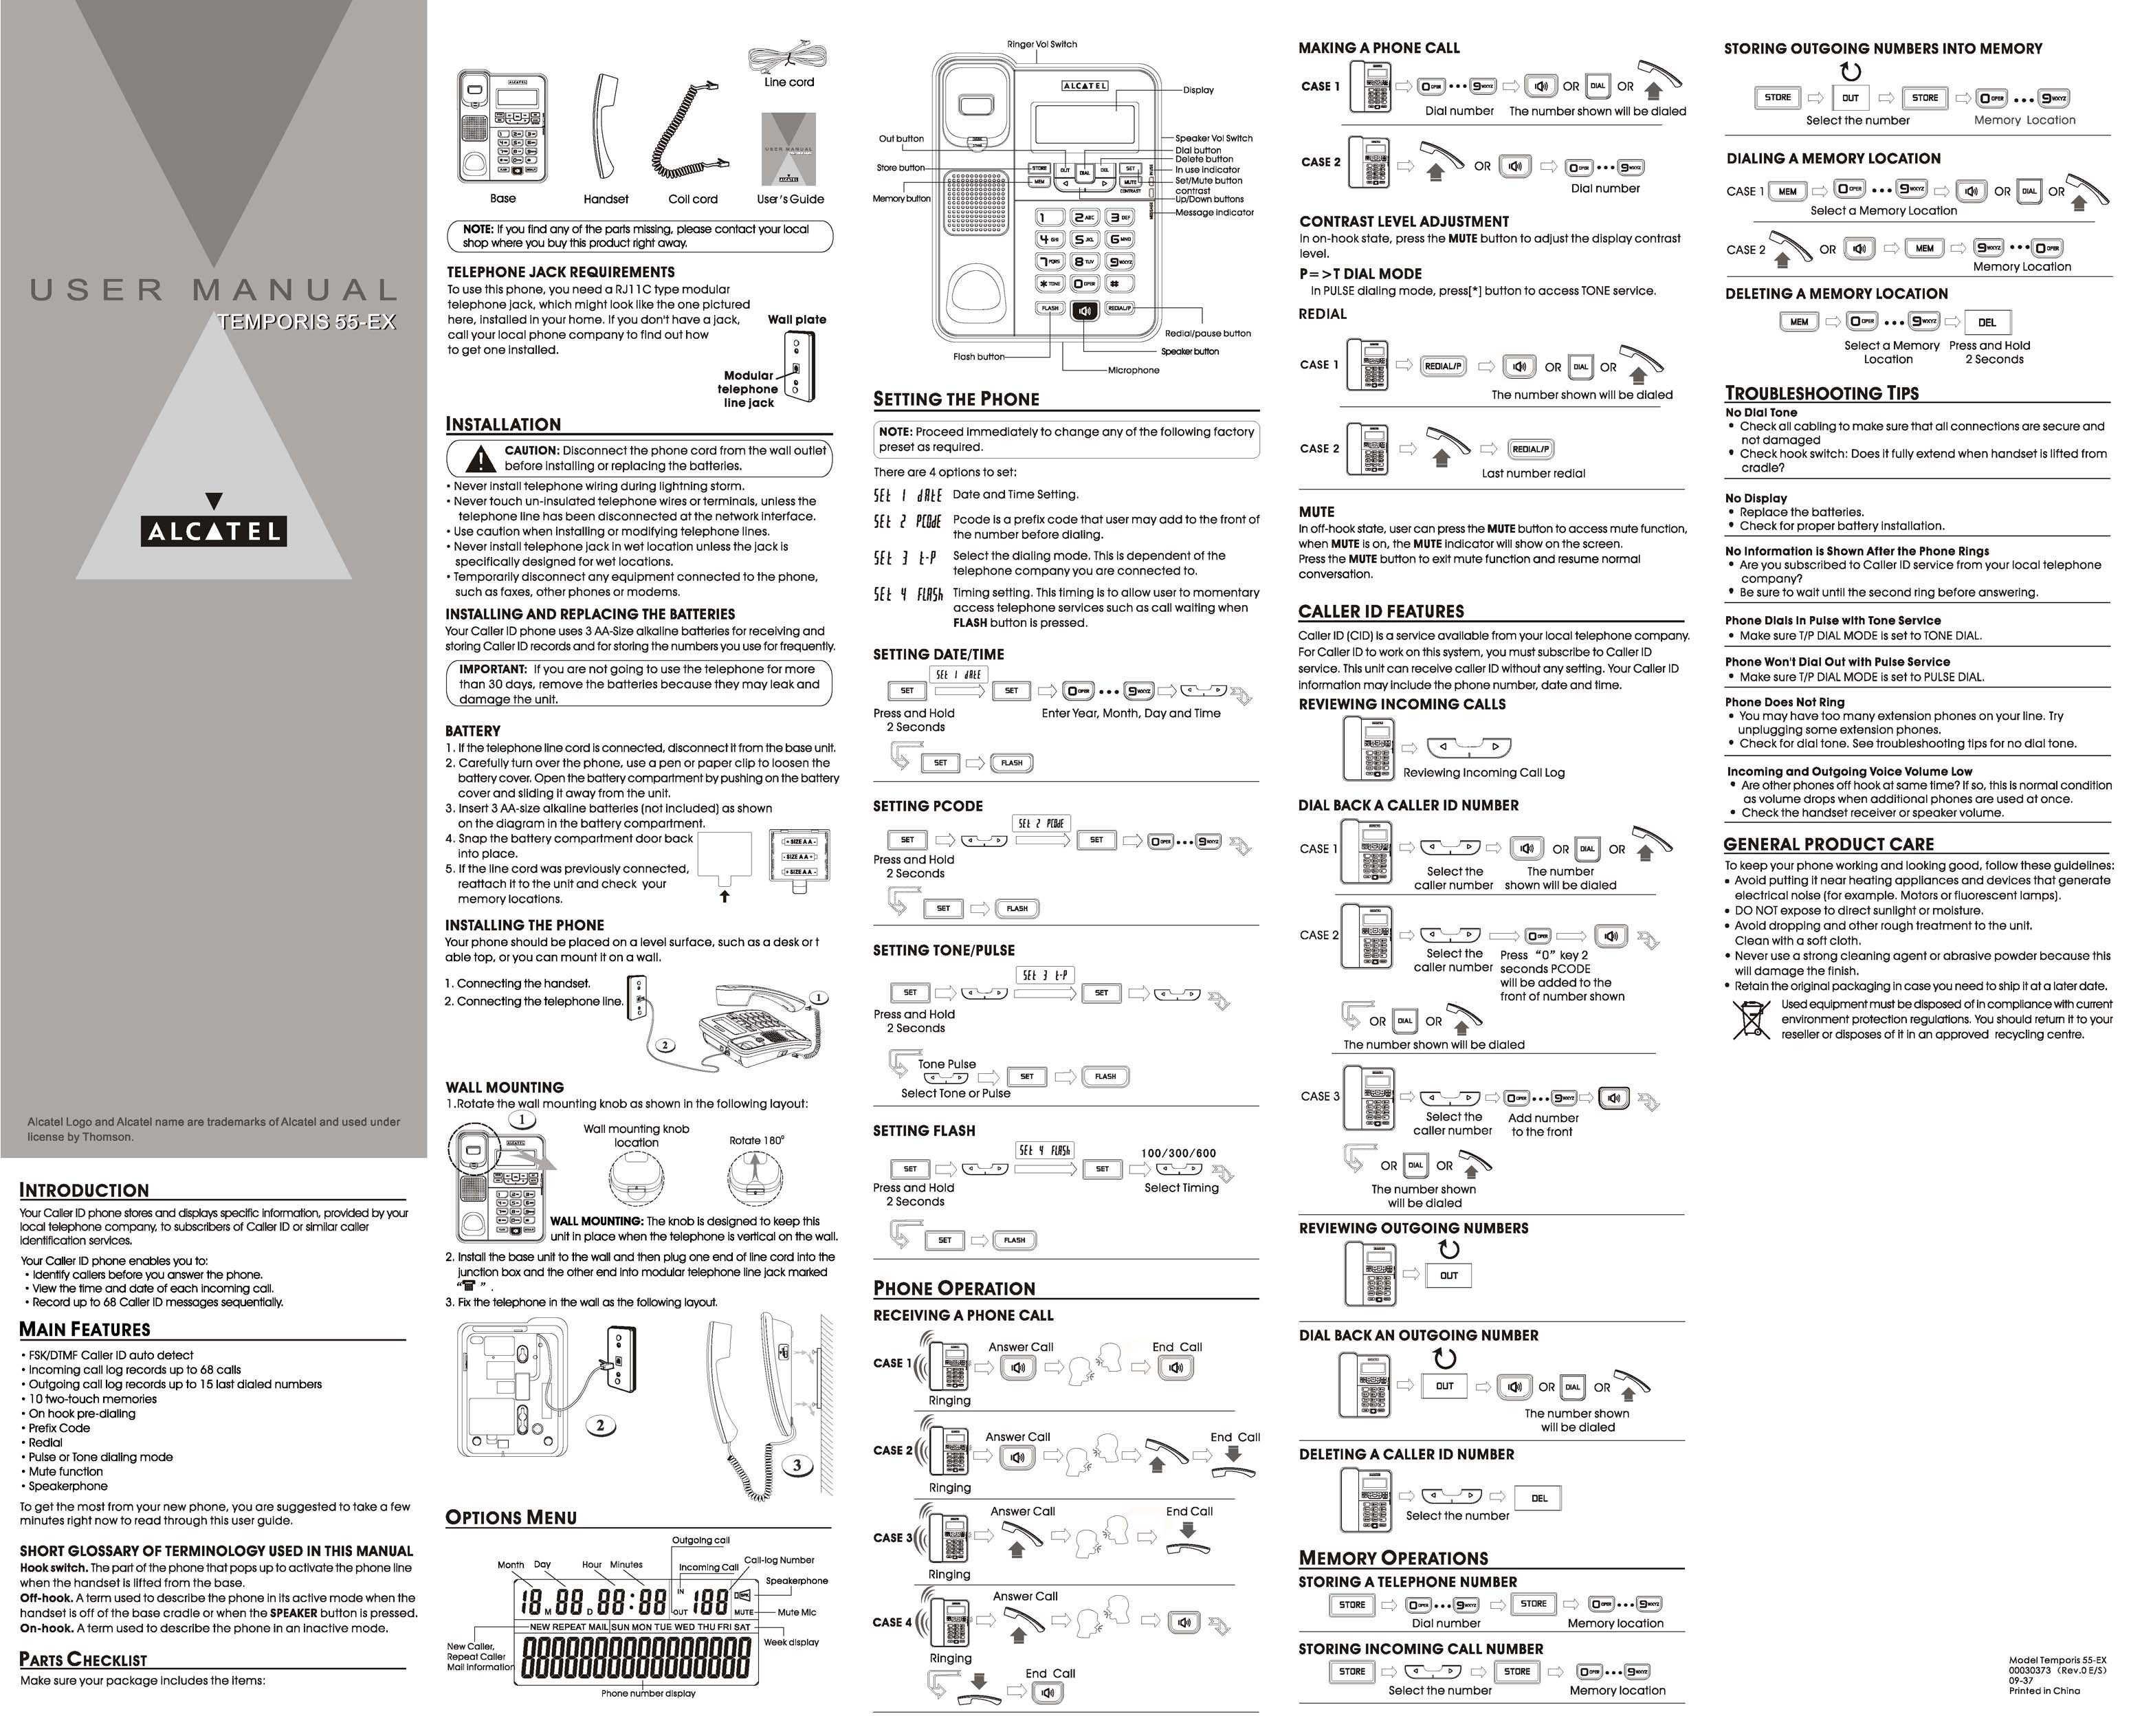 Alcatel-Lucent TEMPORIS 55-EX User Manual